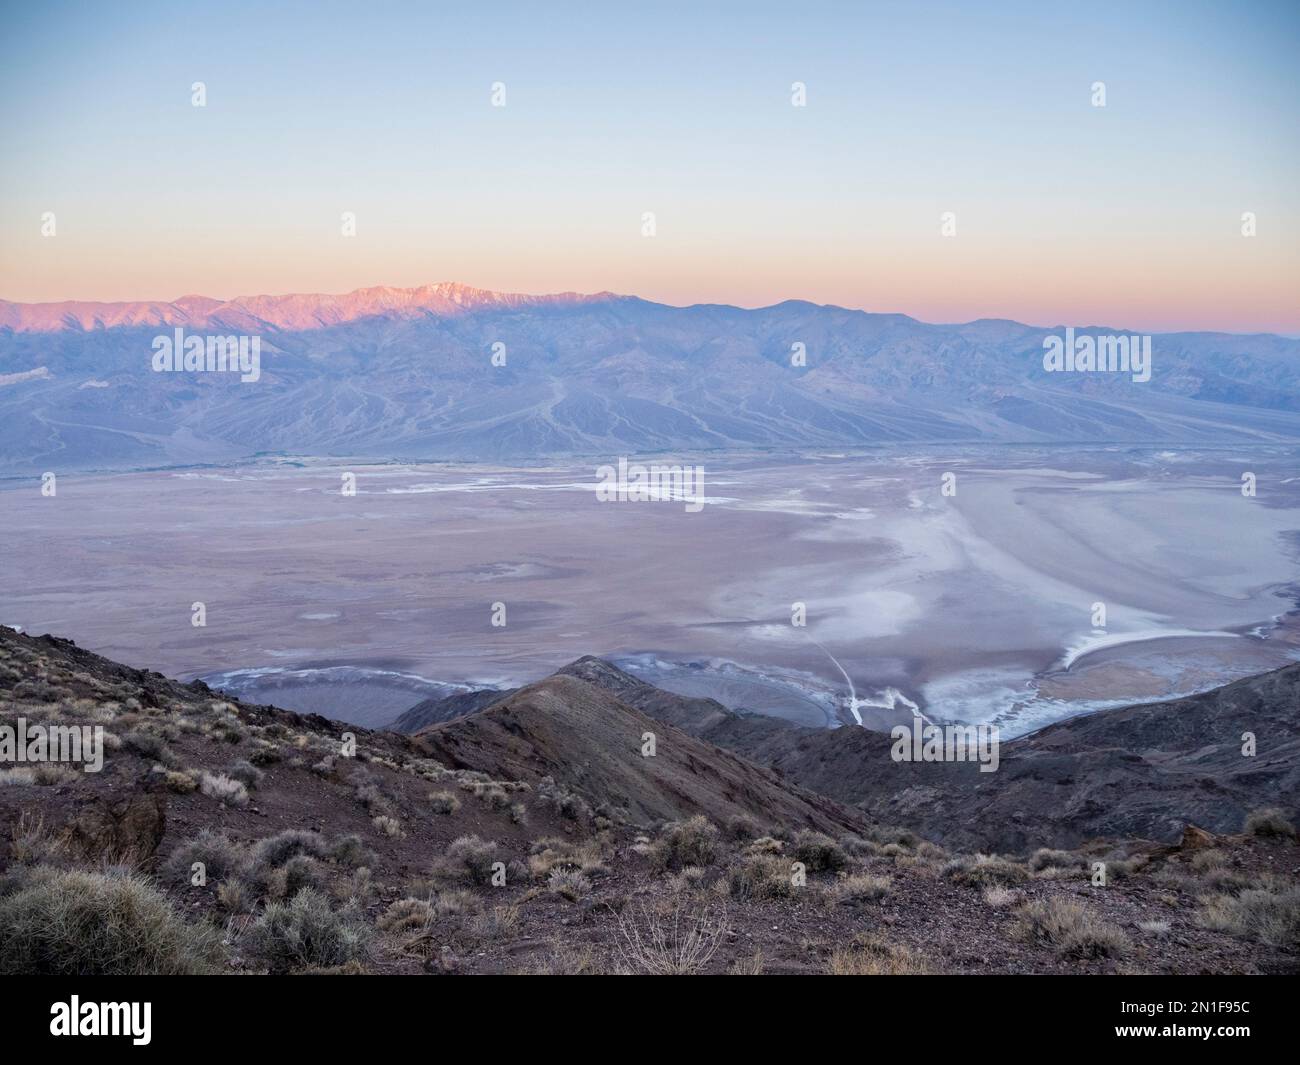 Lever de soleil à travers Badwater Basin, Telescope Peak depuis Dante's View dans le parc national de la Vallée de la mort, Californie, États-Unis d'Amérique, Amérique du Nord Banque D'Images